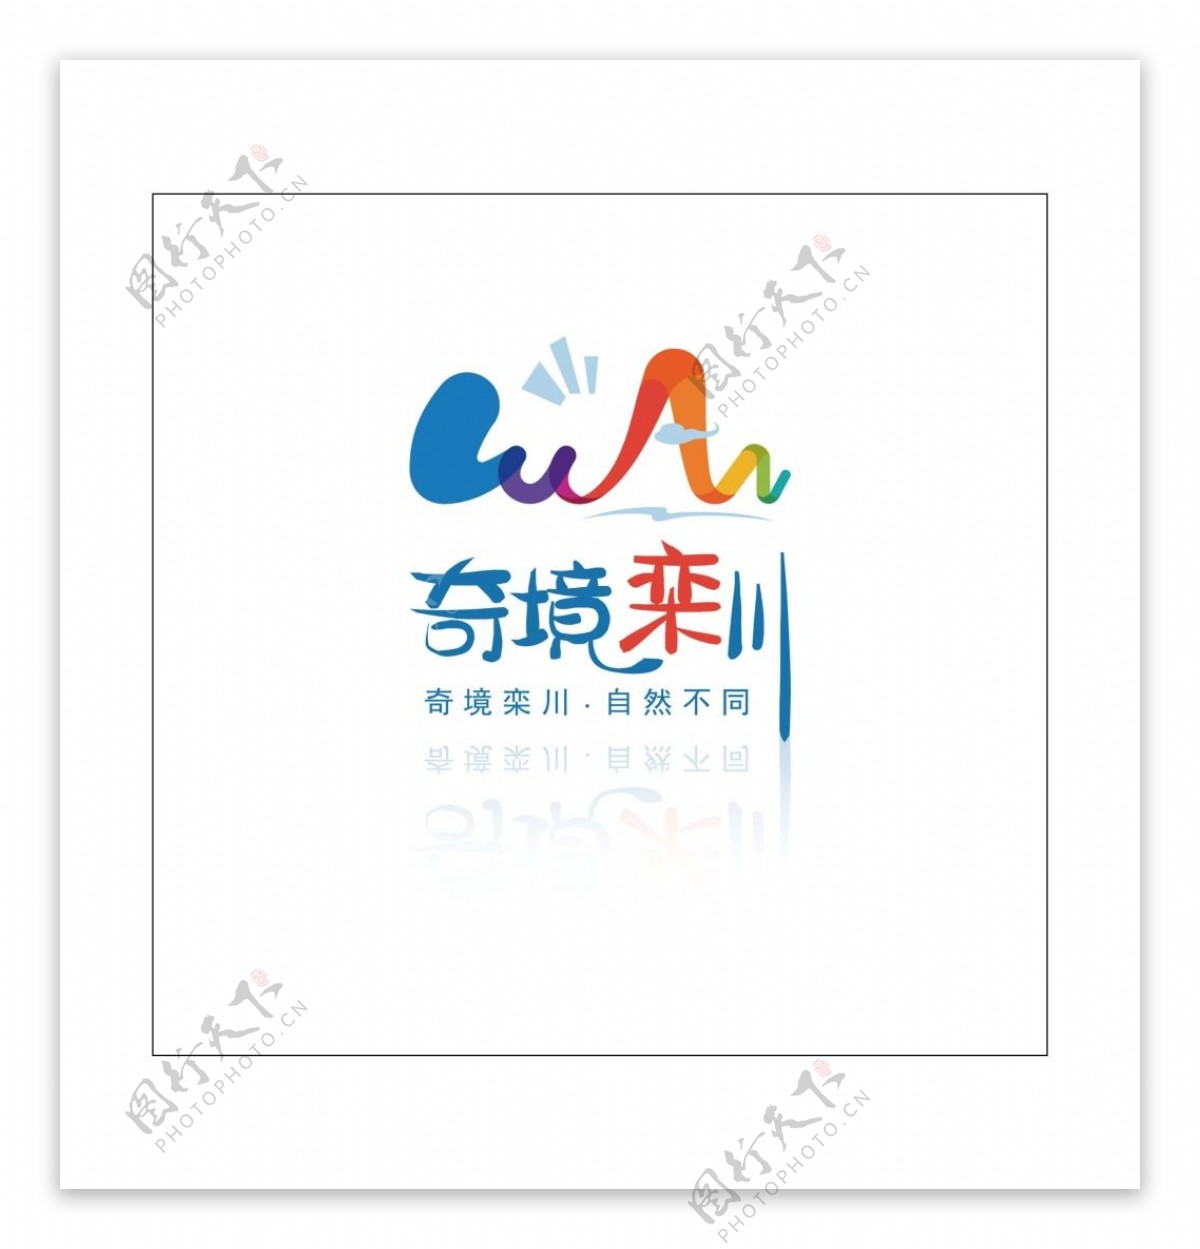 奇境栾川logo标志图片